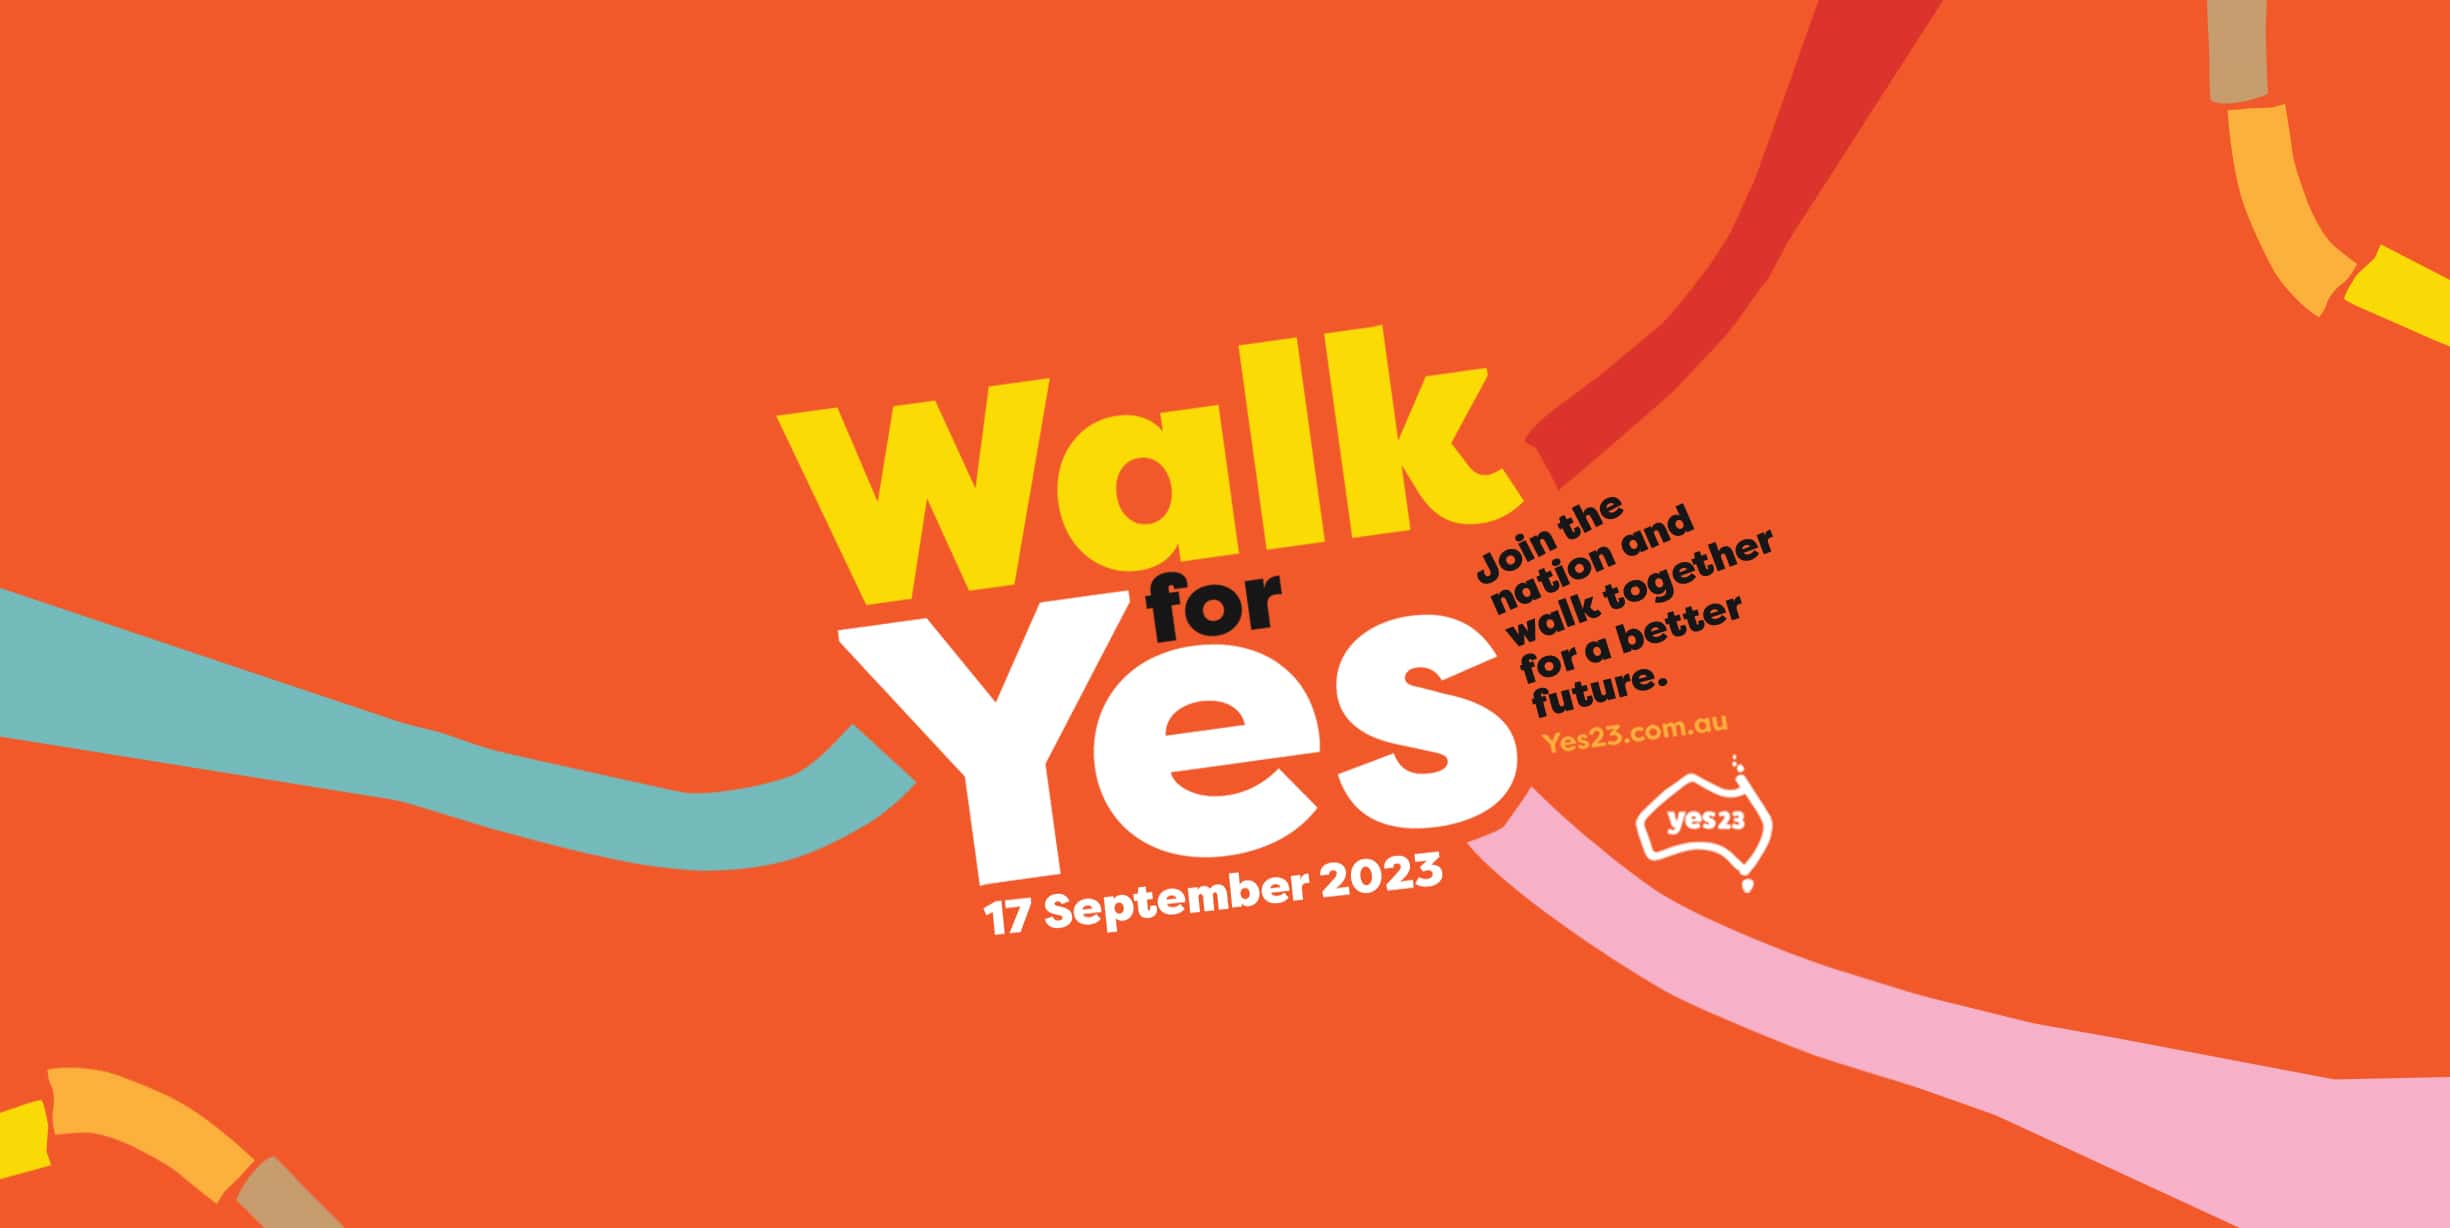 Walk for Yes on Sunday 17 September